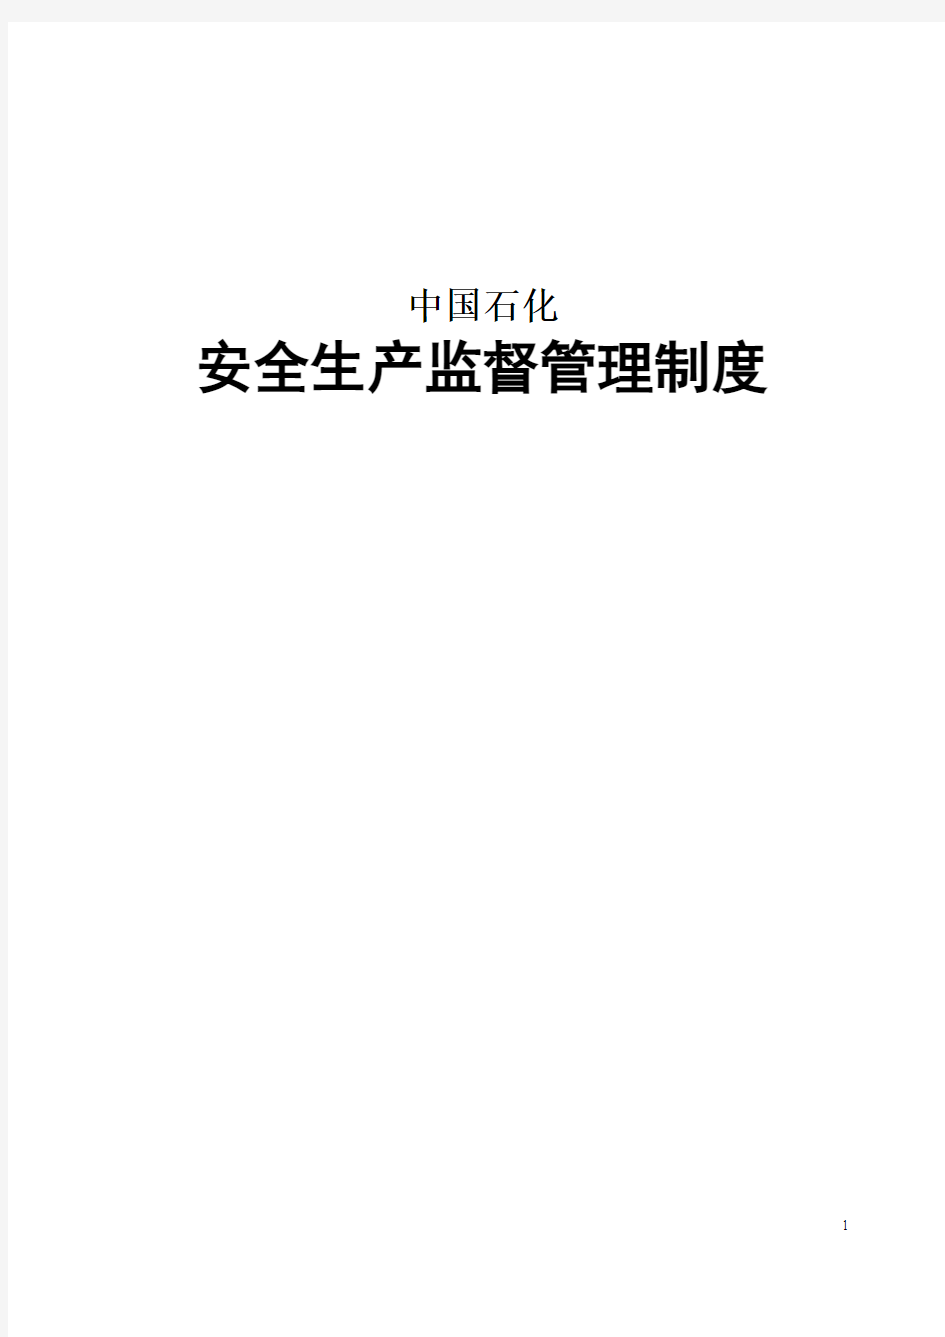 中国石化安全生产监督管理制度最新版